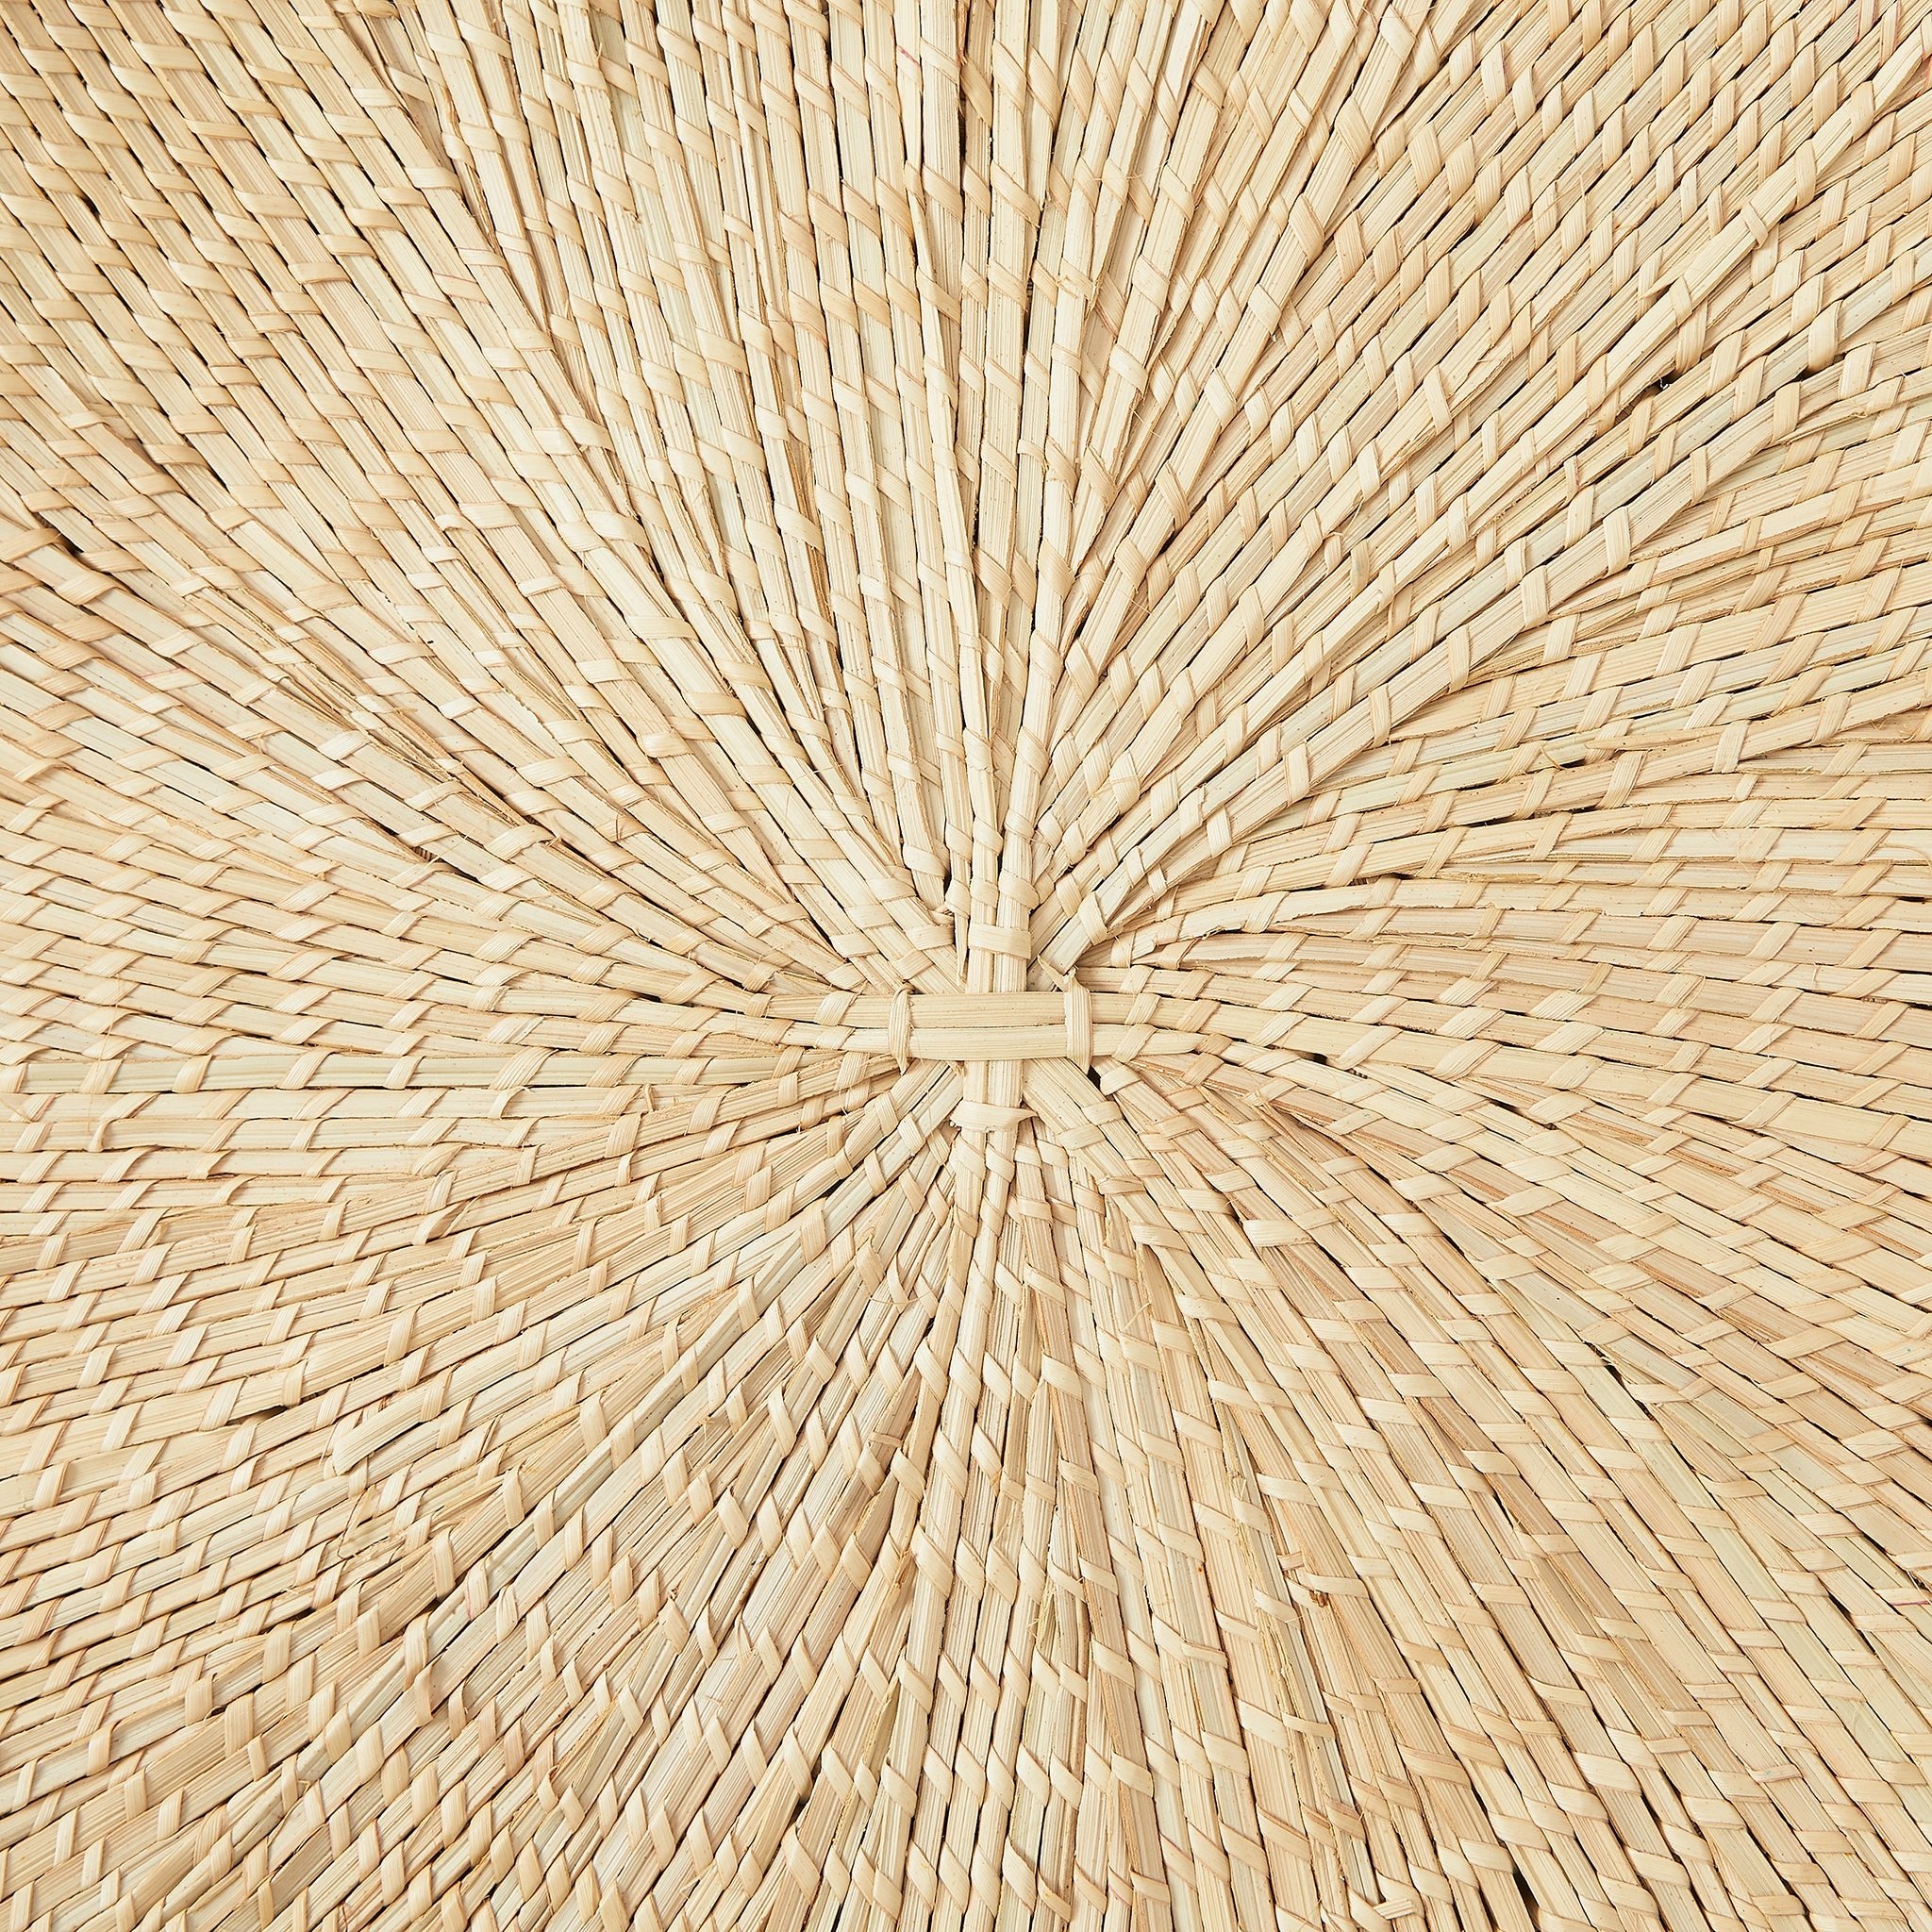 Detailaufnahme: BY NATIVE Sonnenteller Medium, handgeflochten aus Palmenblättern in Malawi